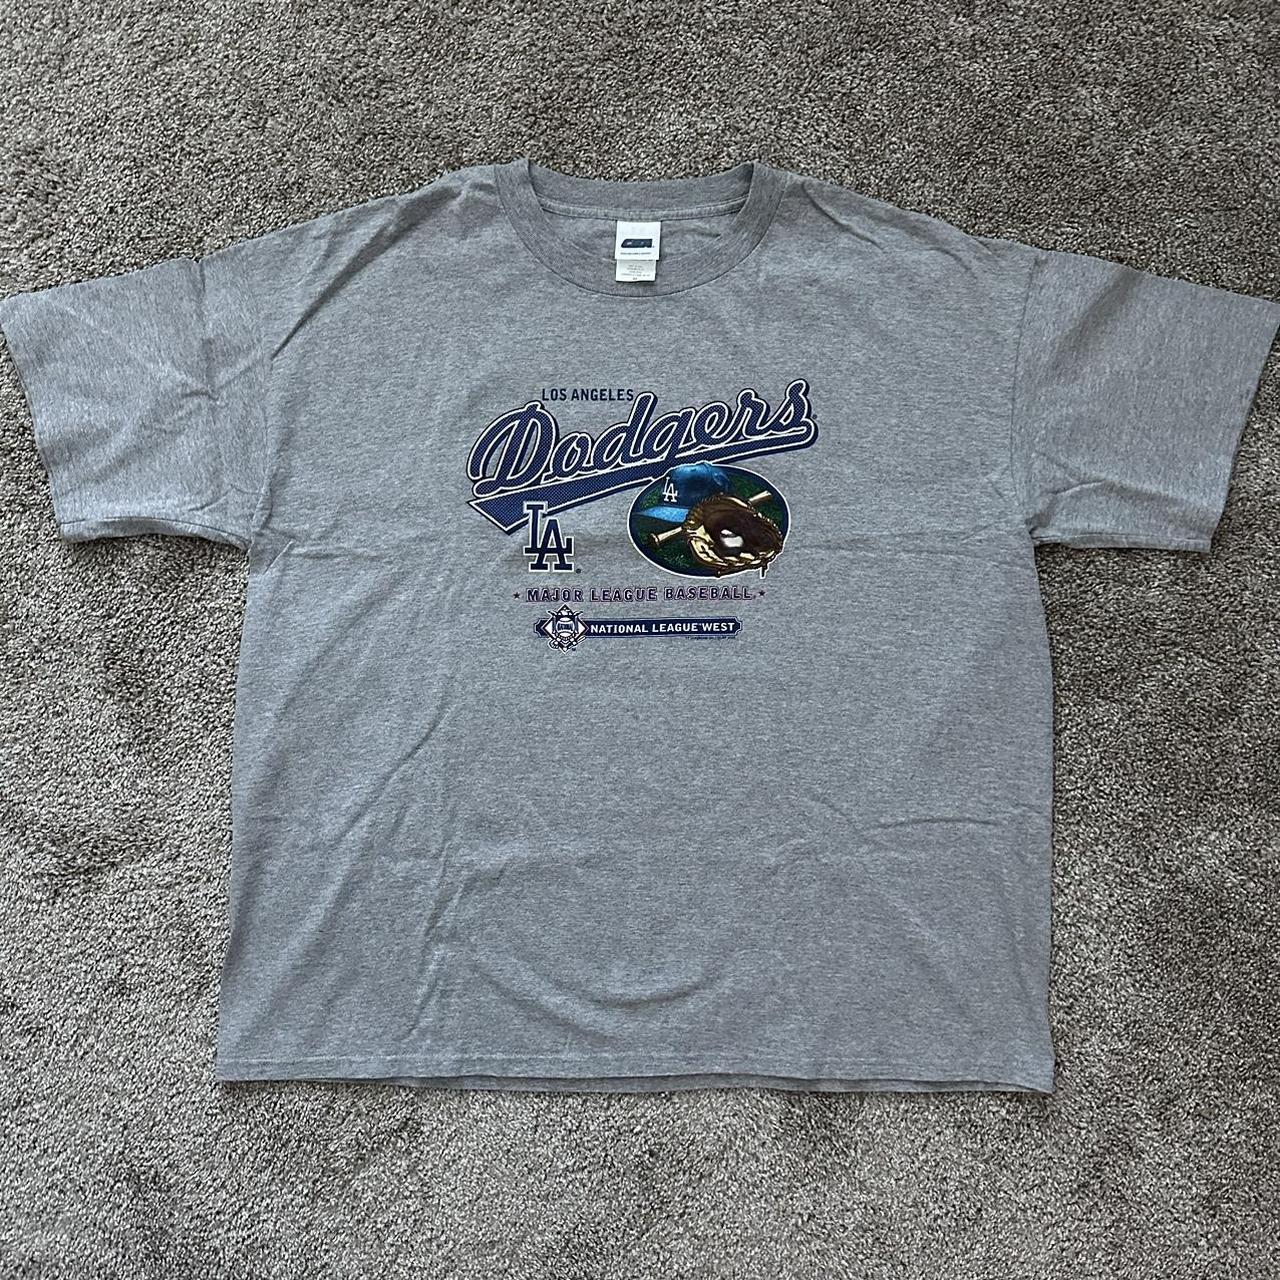 Vintage 2004 Los Angeles Dodgers shirt Size... - Depop